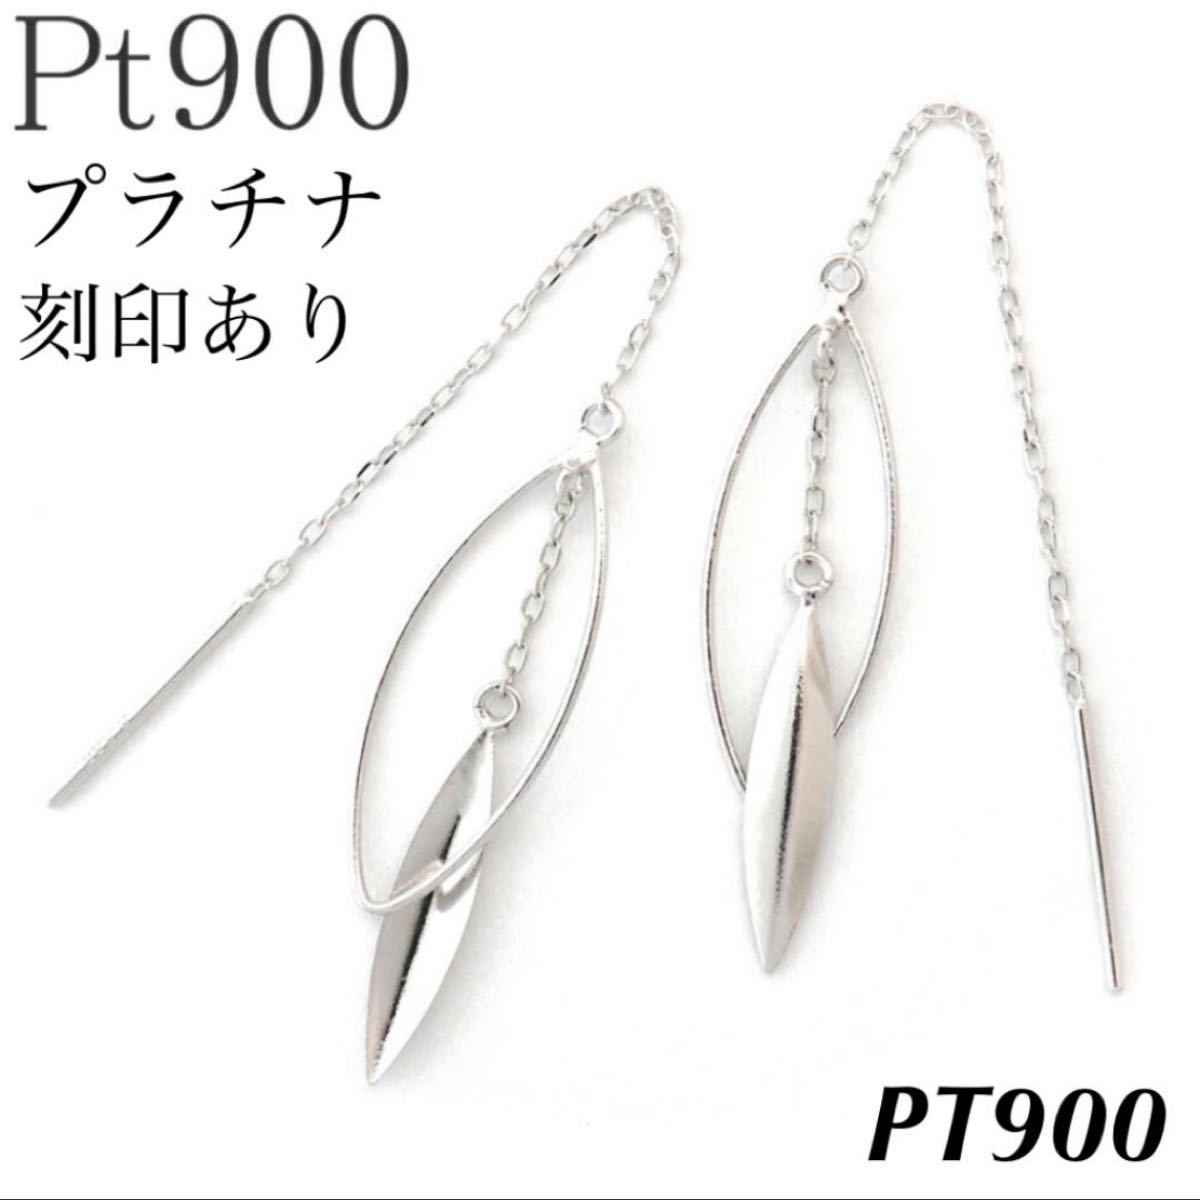 直販格安 新品 PT900 ブラックダイヤモンド プラチナピアス 刻印あり上質日本製18金 ピアス(両耳用)